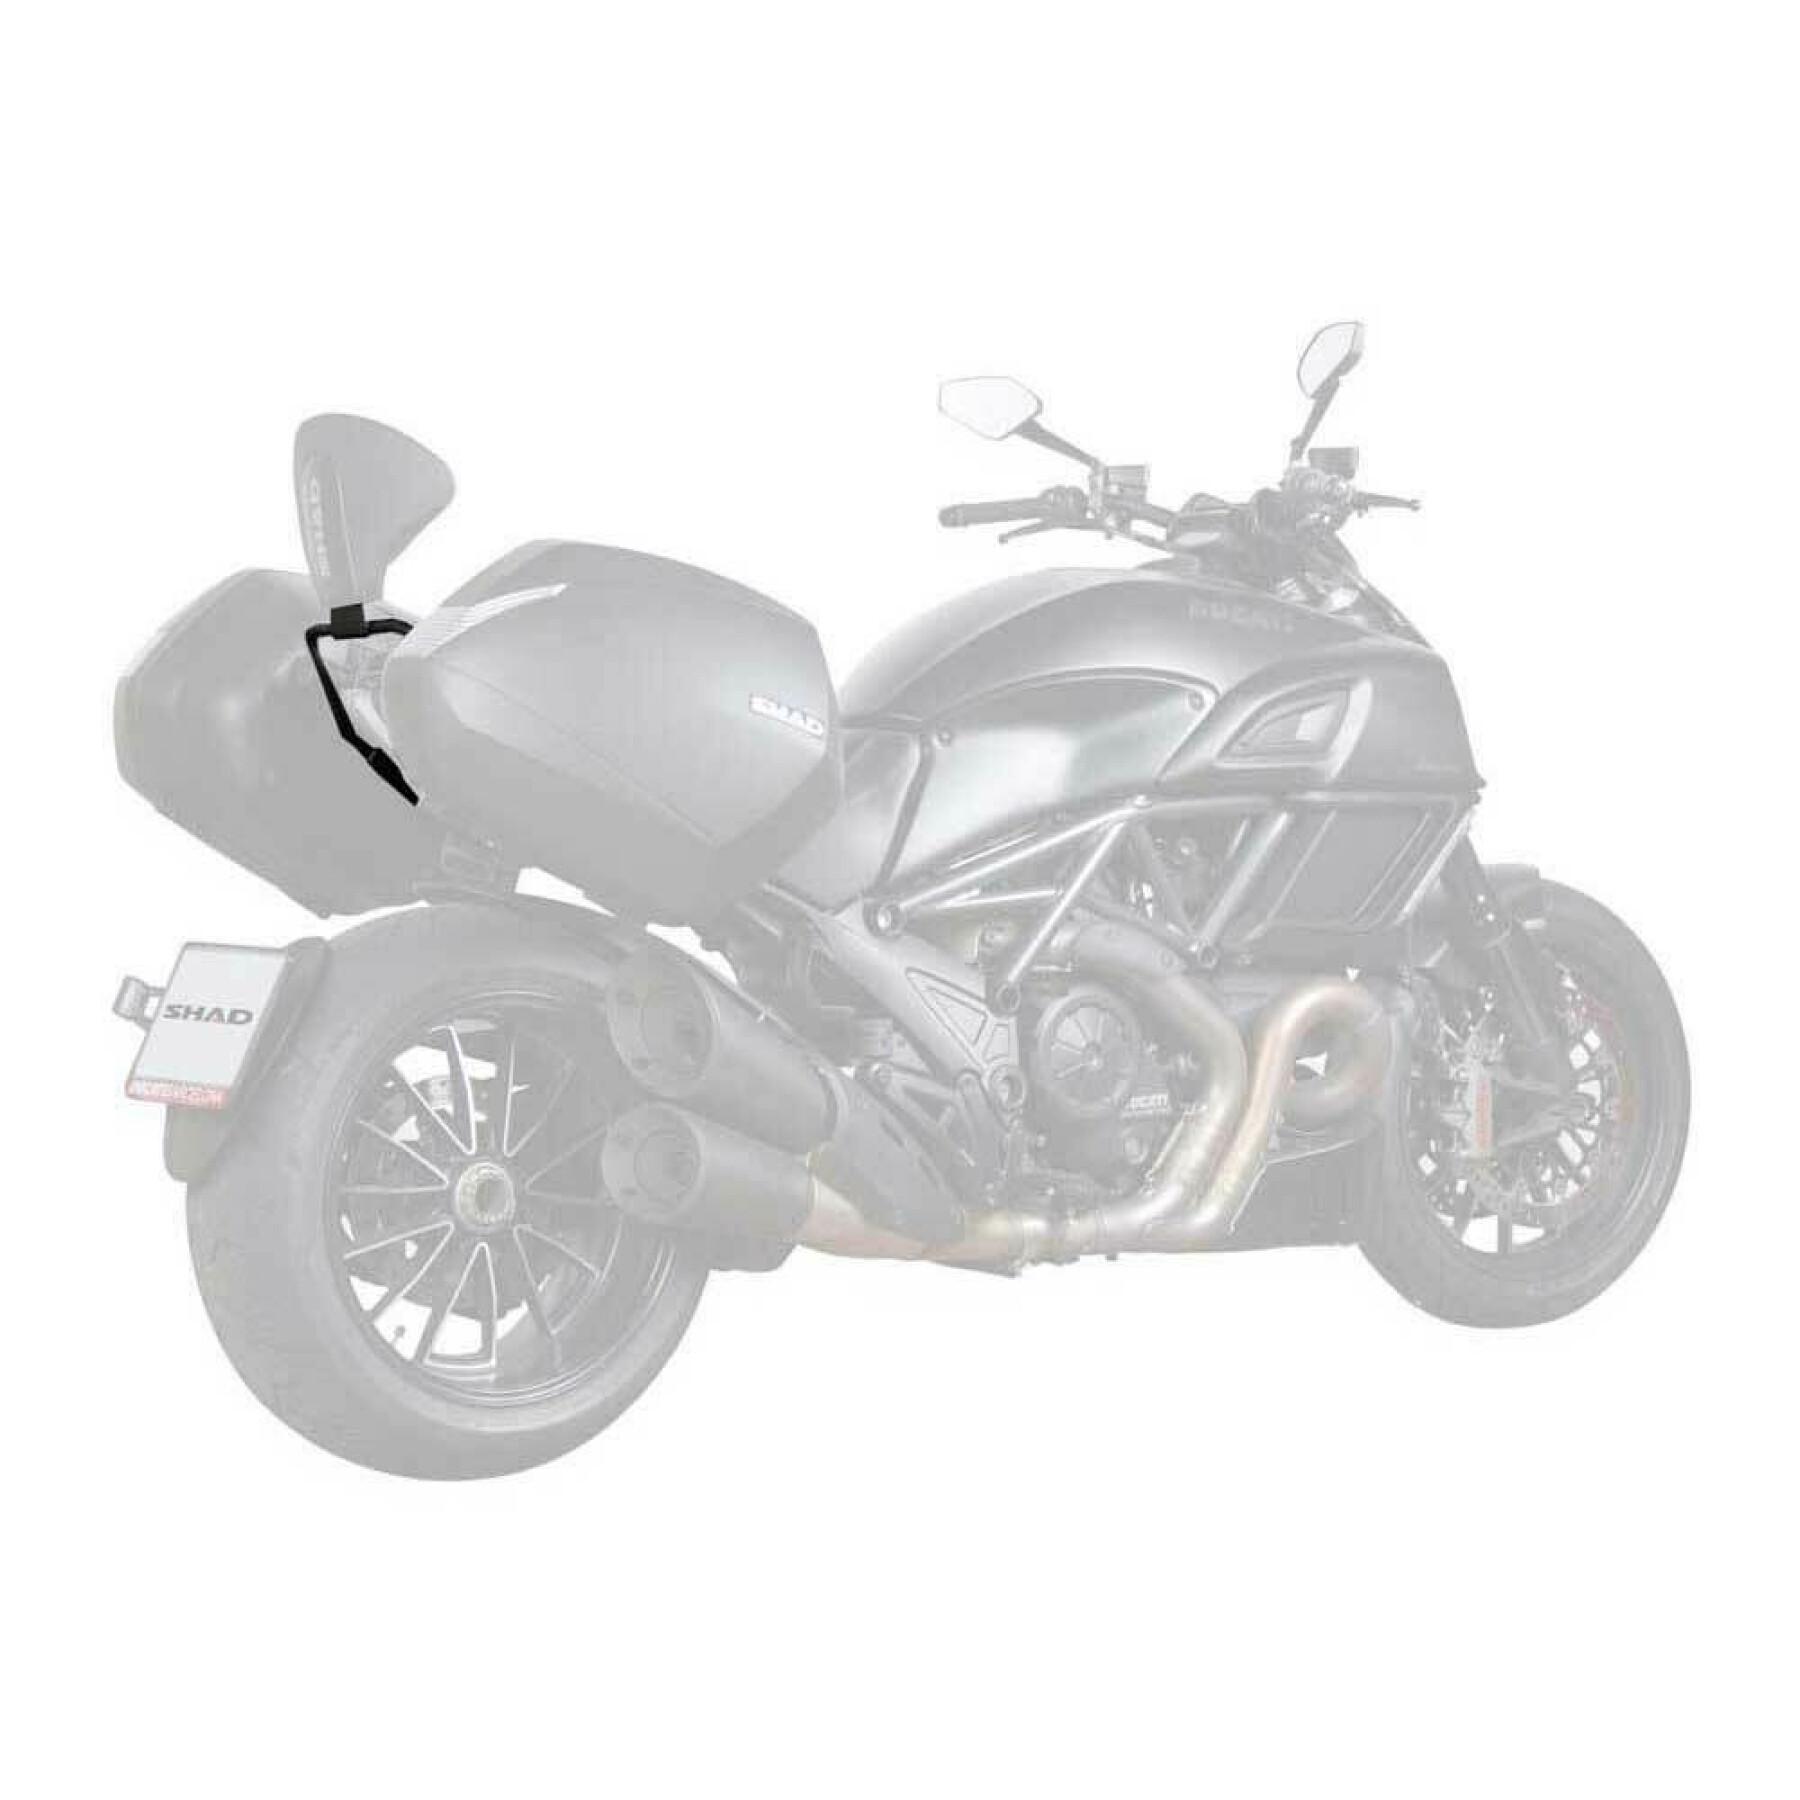 Montering av ryggstöd för motorcykel Shad Ducati diavel 1200